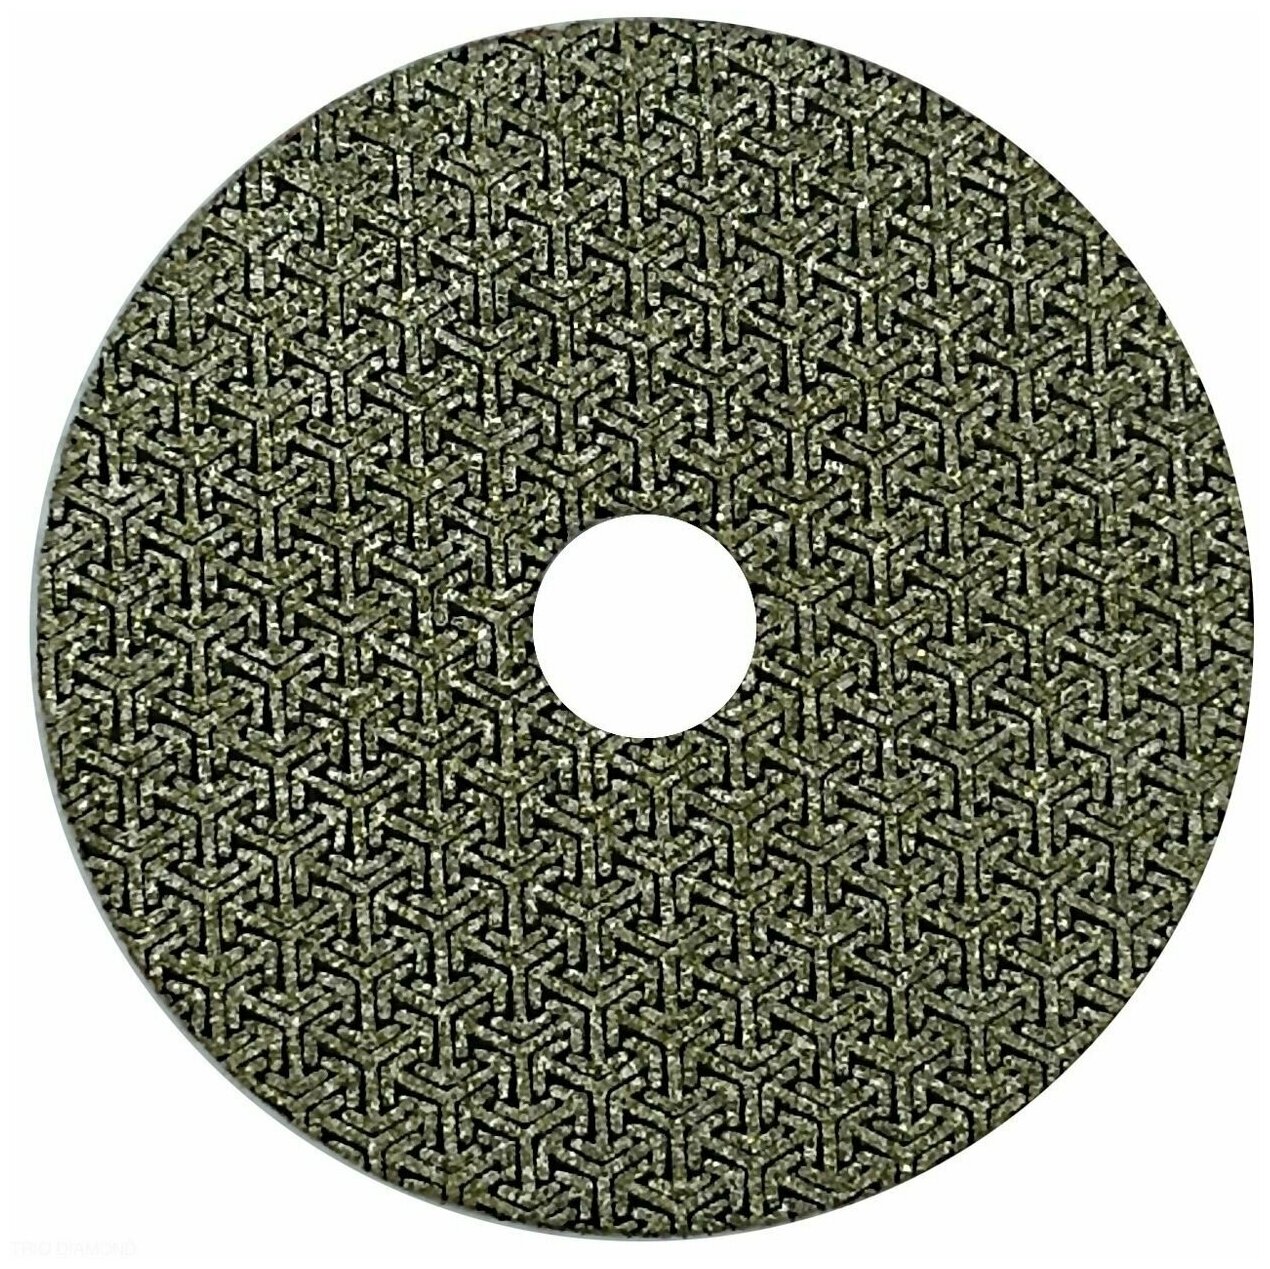 Алмазный гибкий шлифовальный гальванический круг "Черепашка" Hilberg 100 мм № 60, 560060